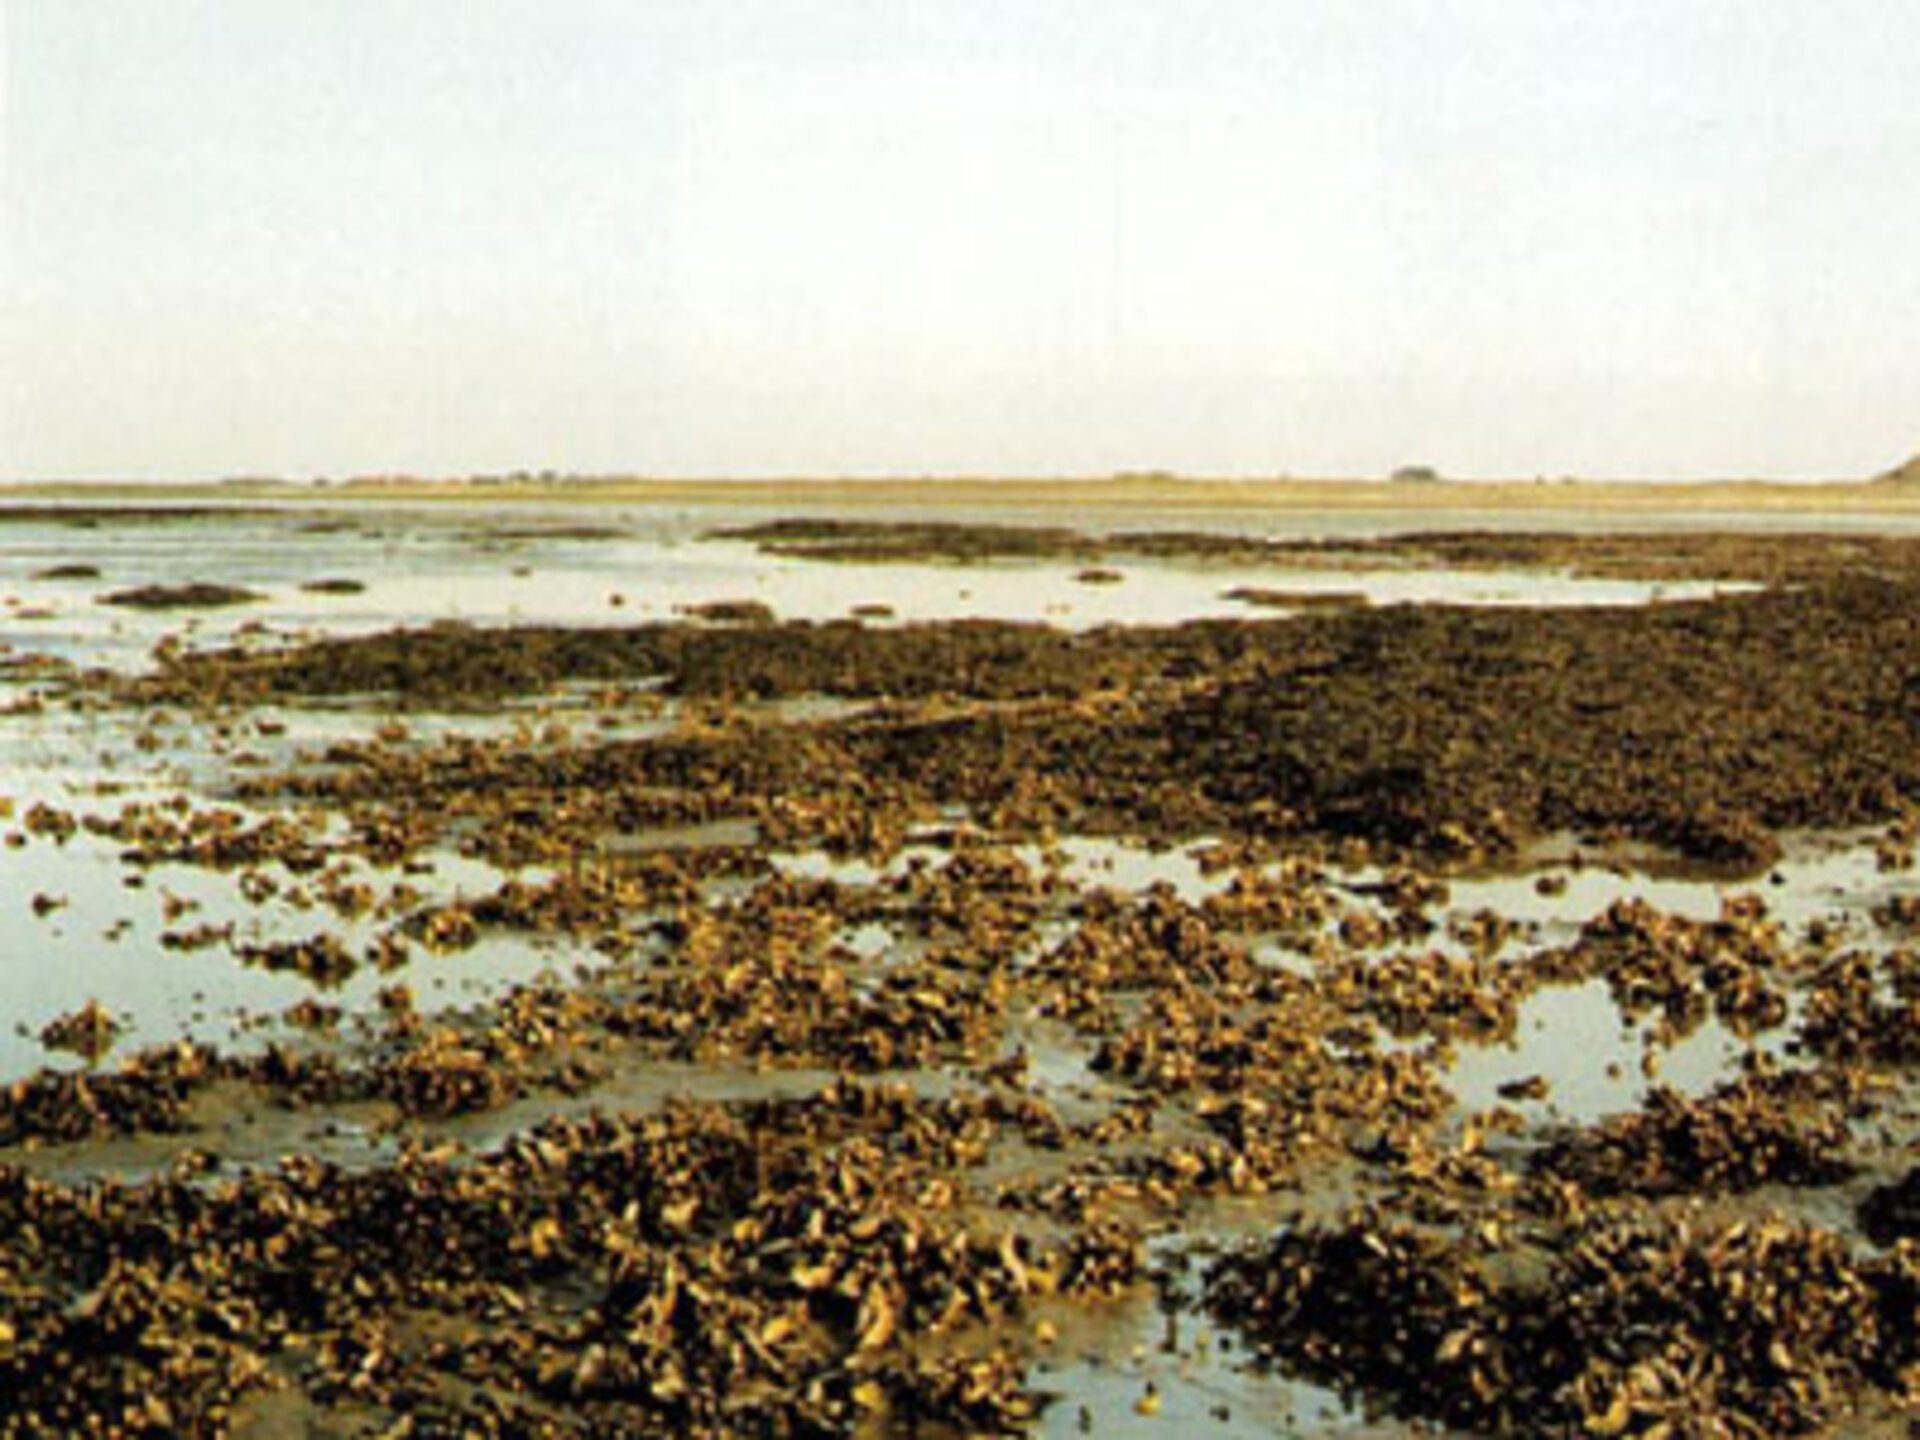 Ergiebiges Jagdrevier der Forscher: Muschel- und Austernbänke vor der Insel Sylt